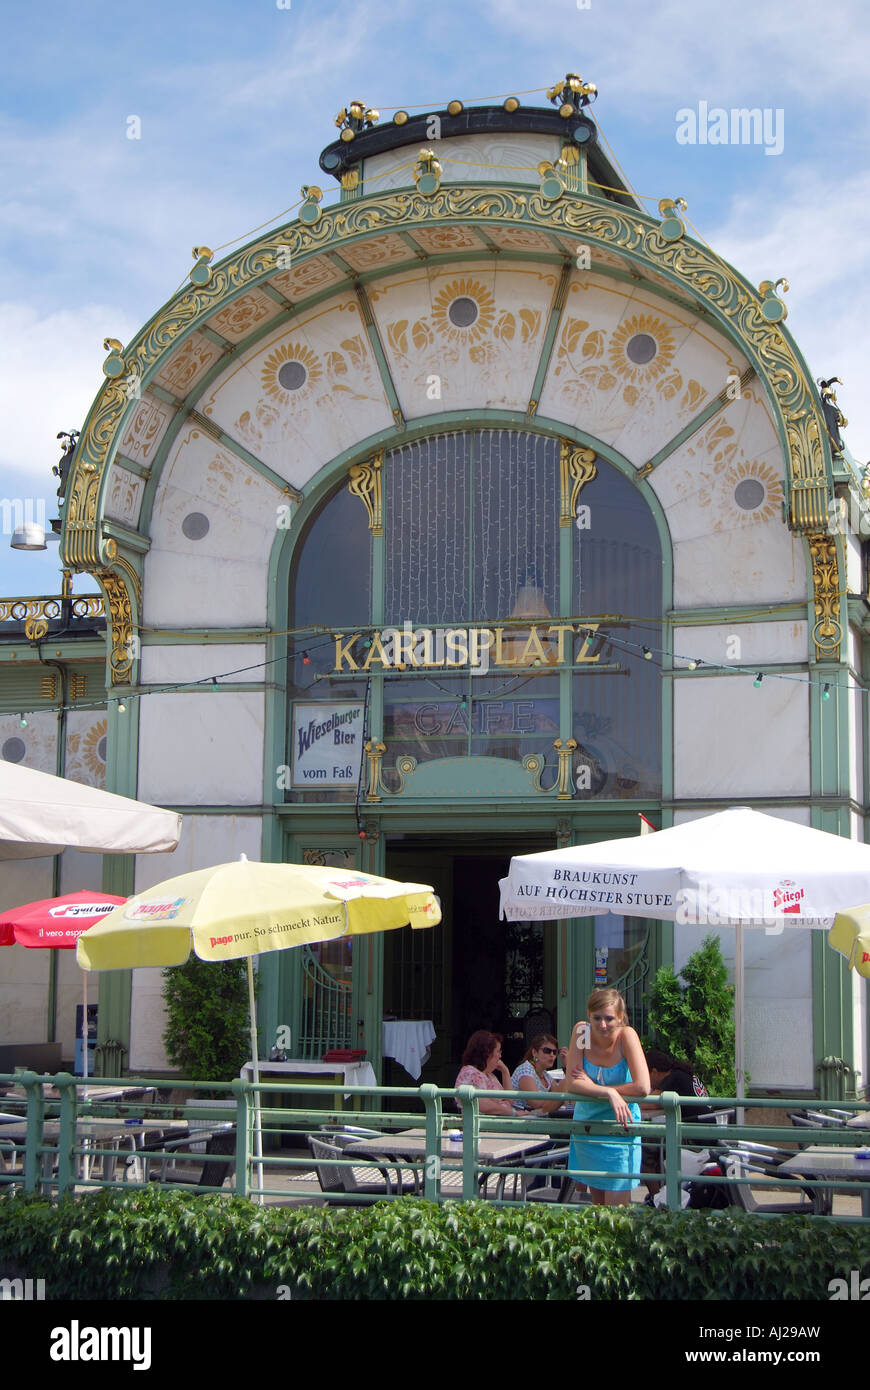 Wagner Pavilions Cafe, Karlsplatz, Vienna, Wein, Republic of Austria Stock Photo